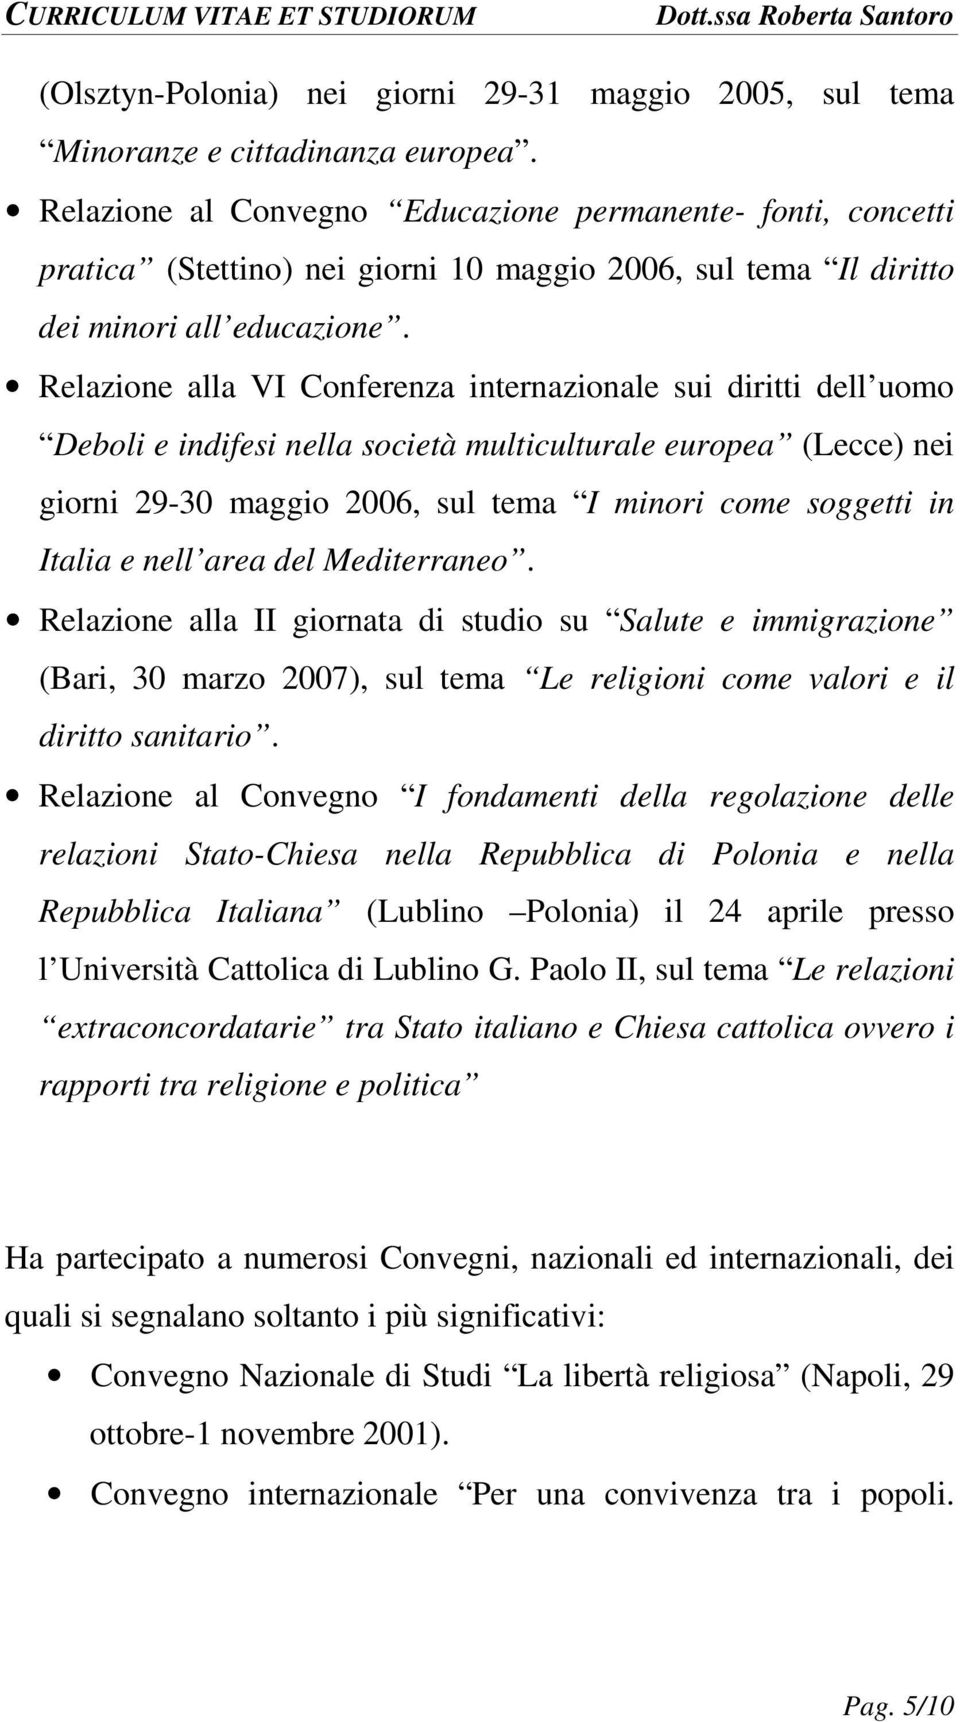 Relazione alla VI Conferenza internazionale sui diritti dell uomo Deboli e indifesi nella società multiculturale europea (Lecce) nei giorni 29-30 maggio 2006, sul tema I minori come soggetti in